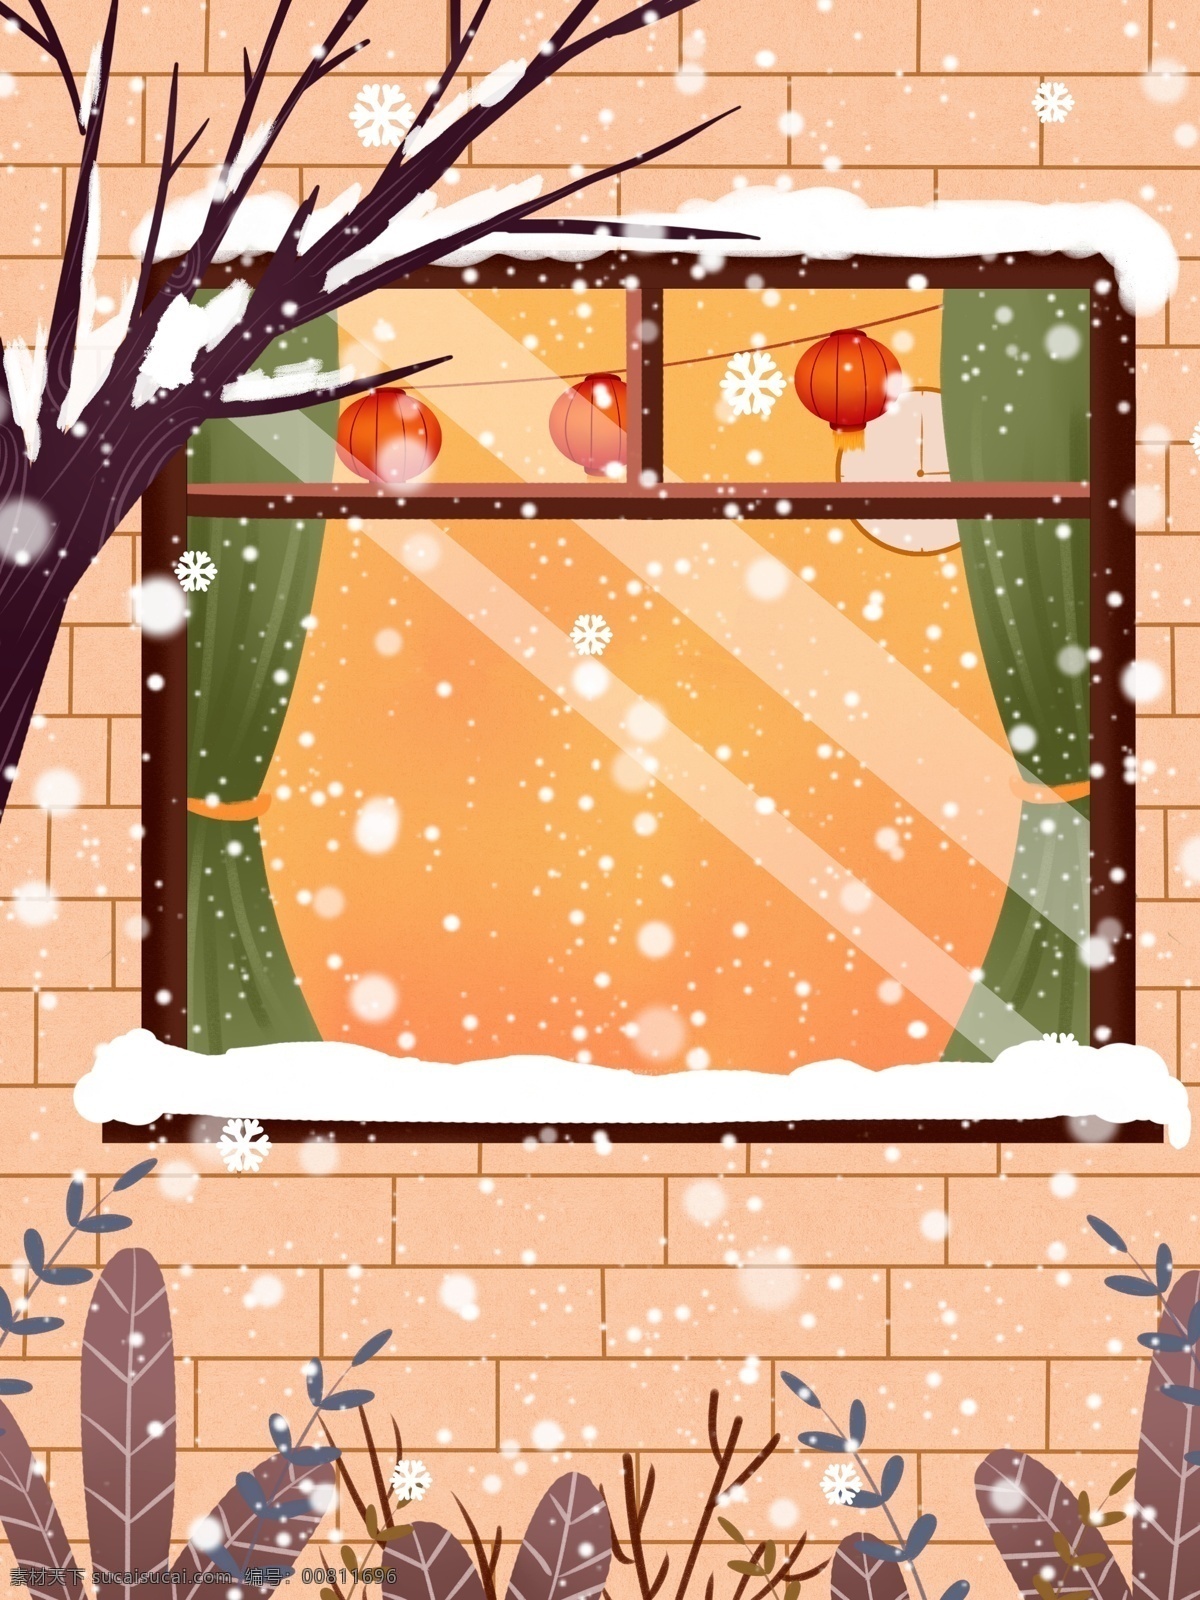 冬季 小雪 窗外 风景 背景 背景设计 雪景 房屋 大雪节气 中国风节气 彩绘背景